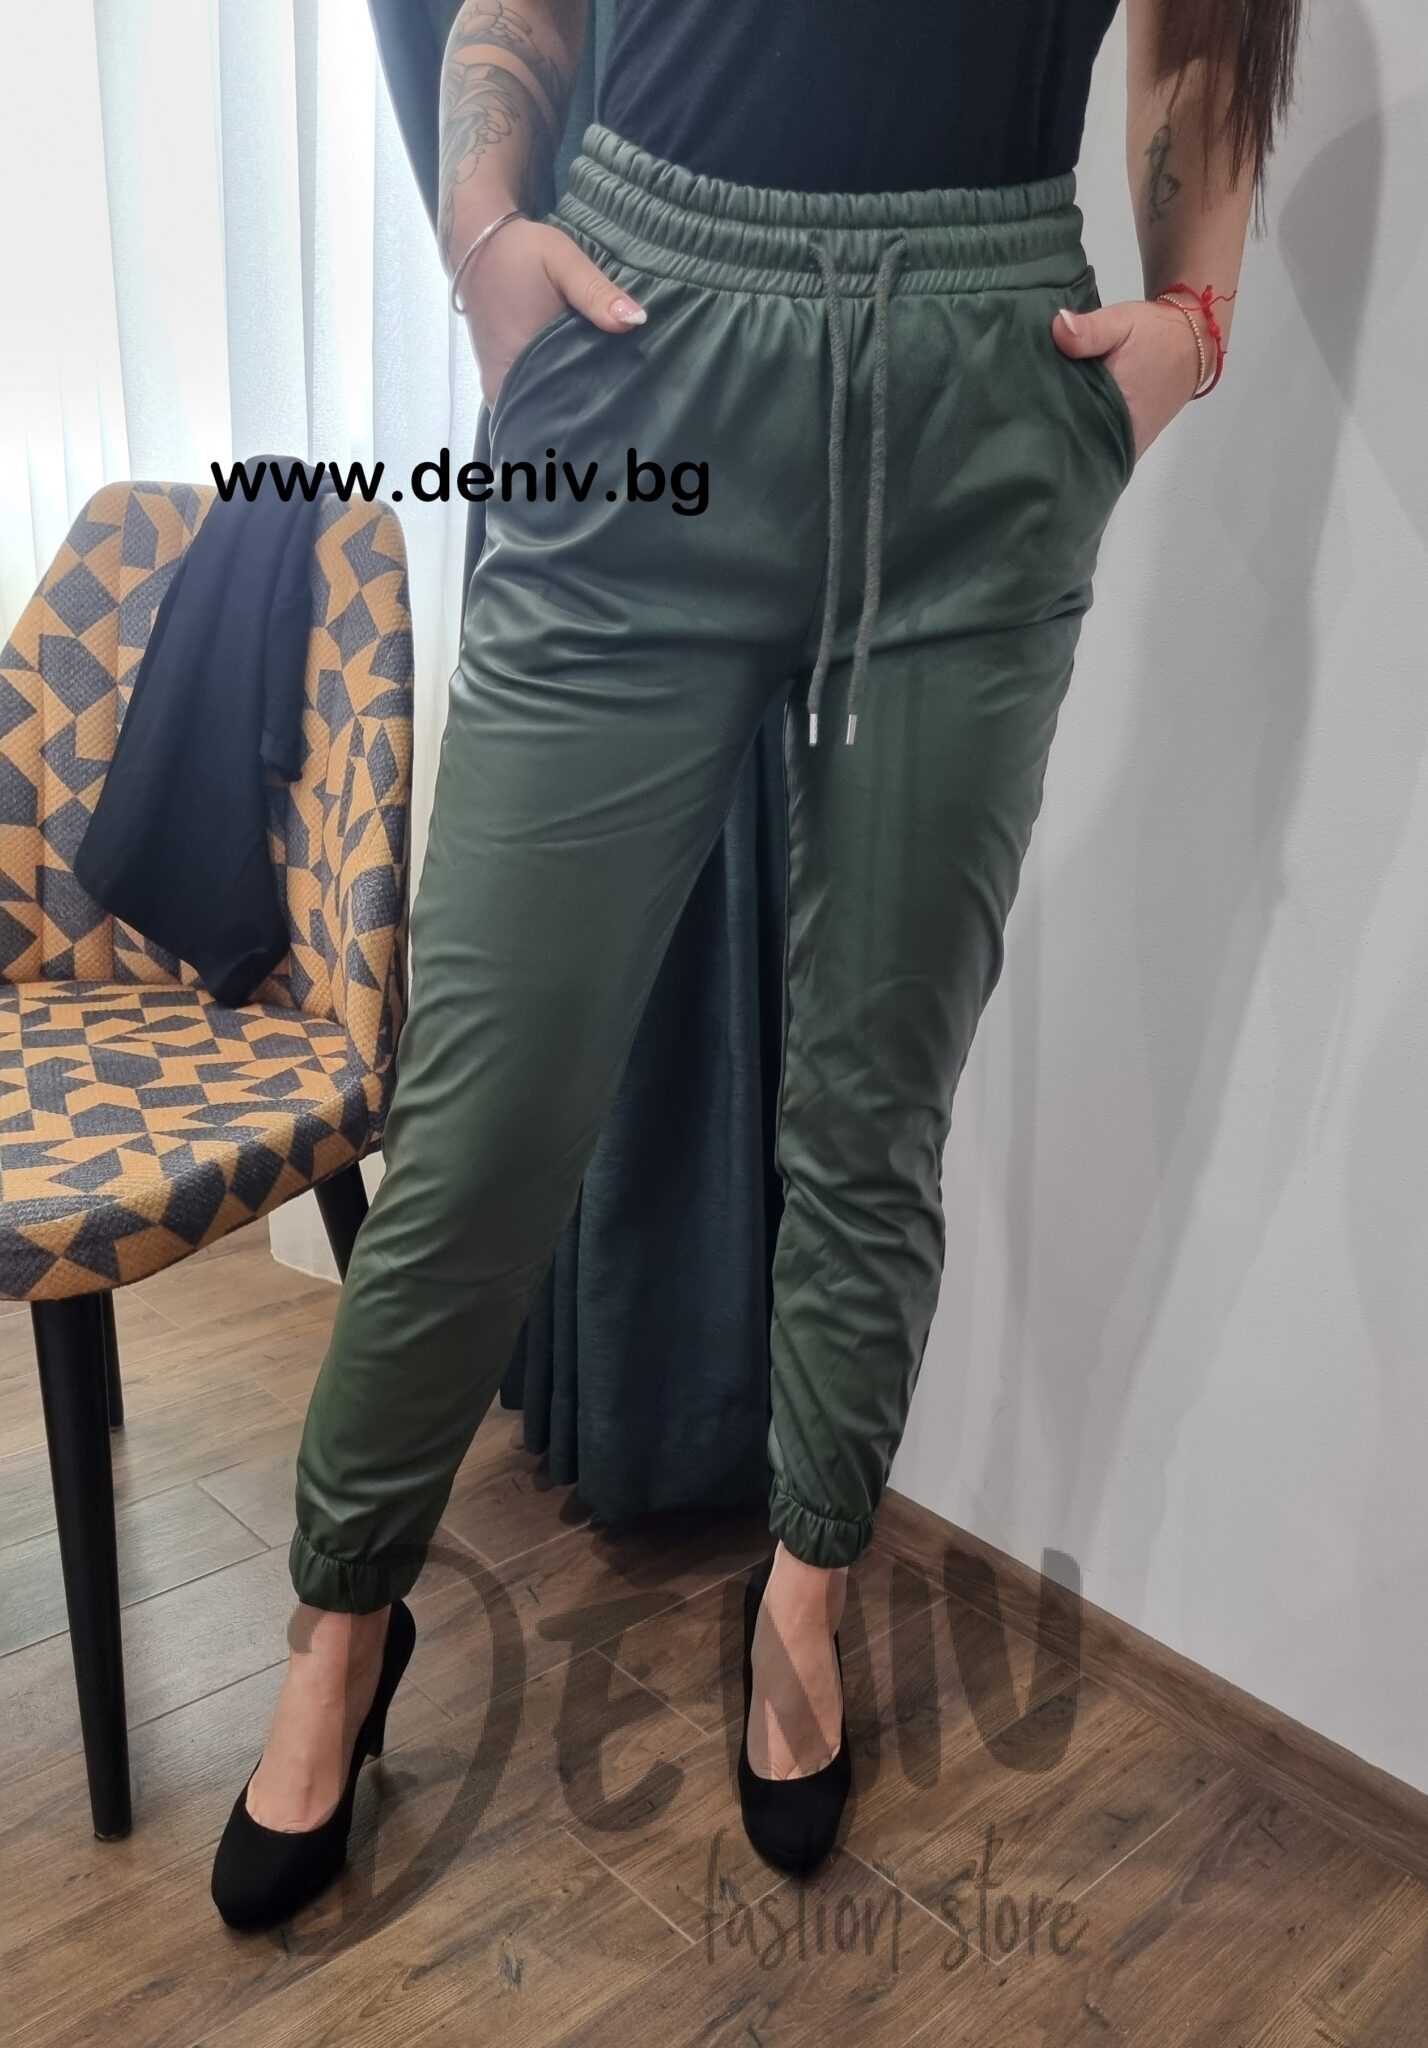 Дамски ватиран кожен панталон маслено зелено.2